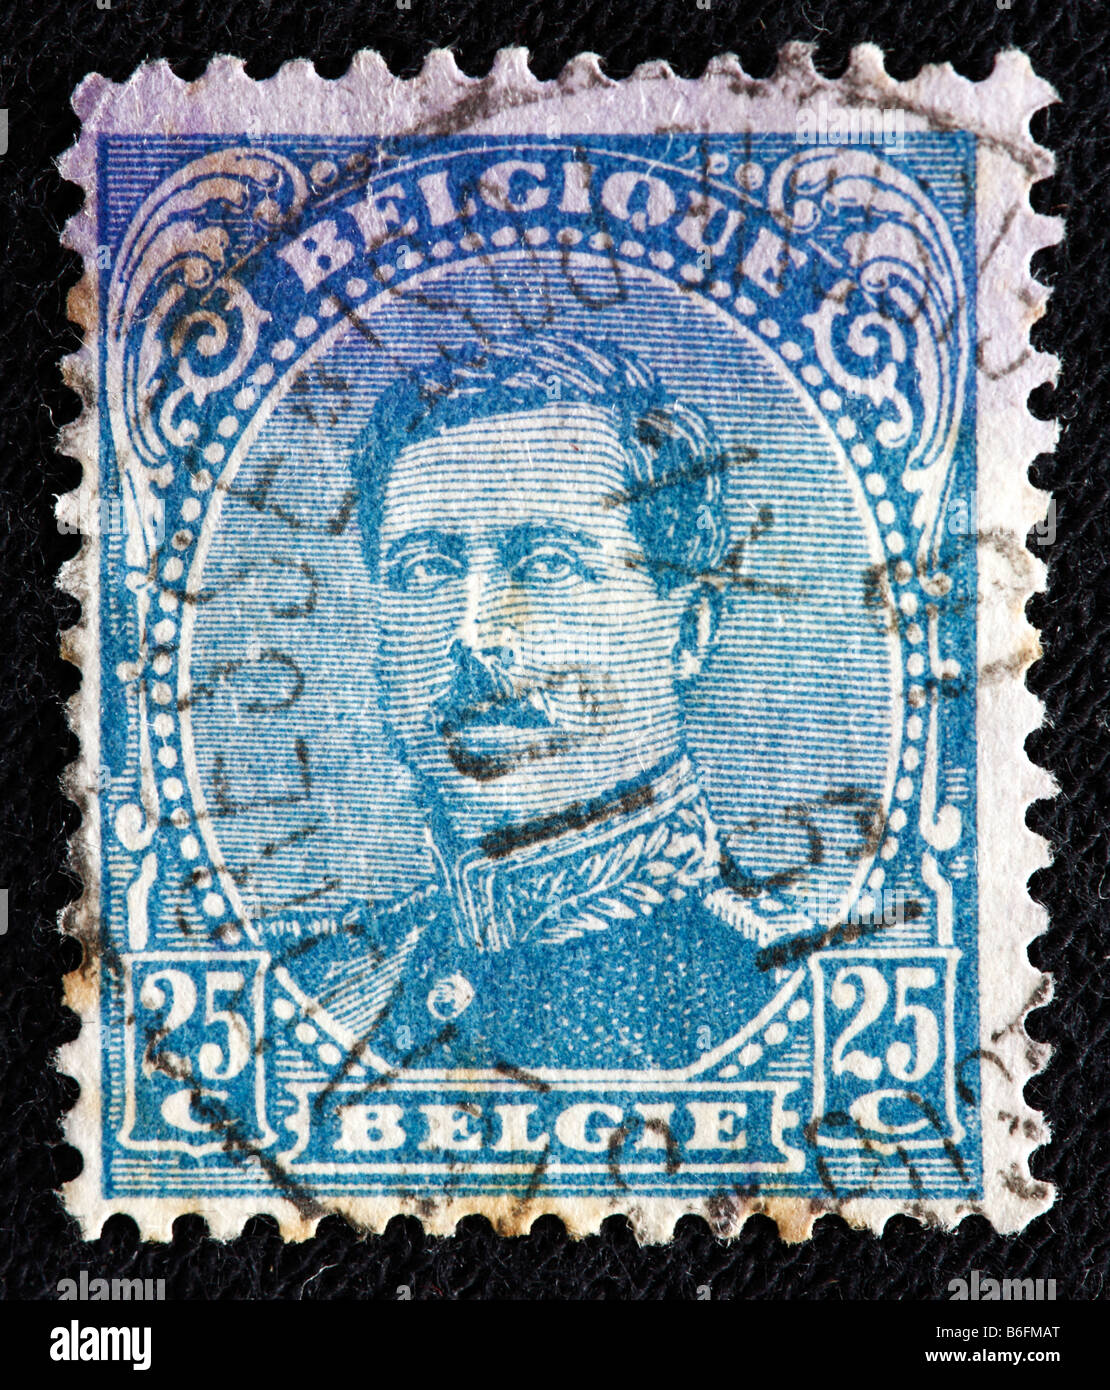 Le Roi Albert Ier de Belgique (1909-1934), timbre-poste, Belgique Banque D'Images